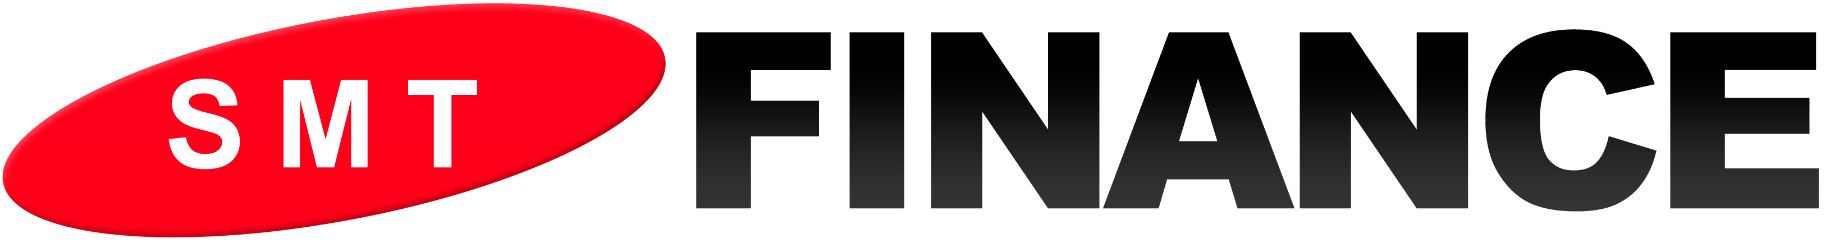 Finance_logo